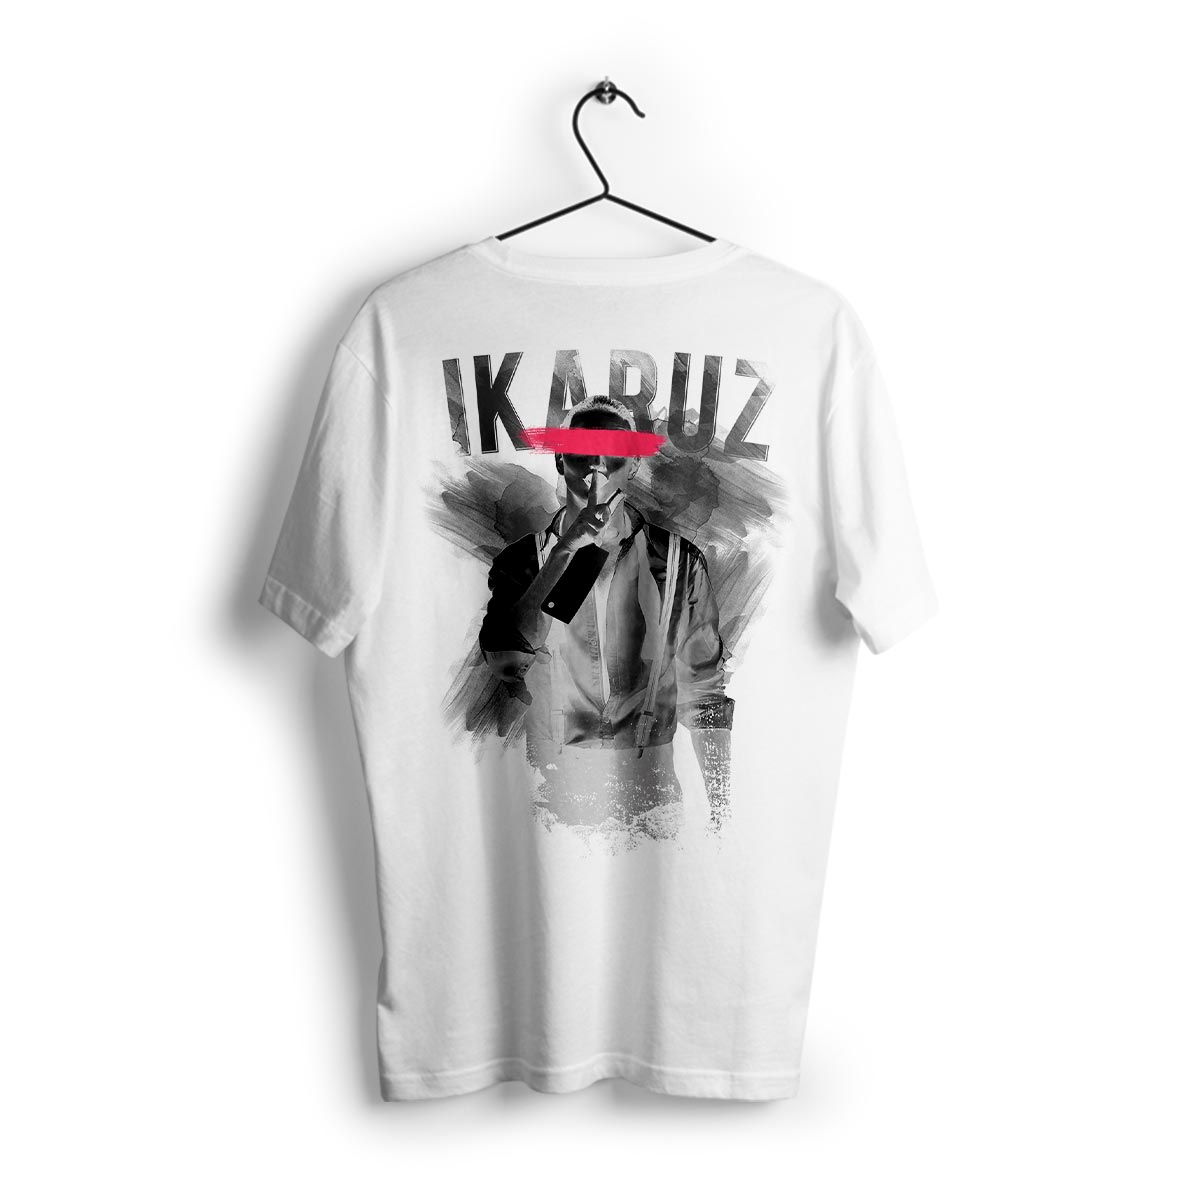 Ikrz | Nightmare | White Shirt - Ikaruz